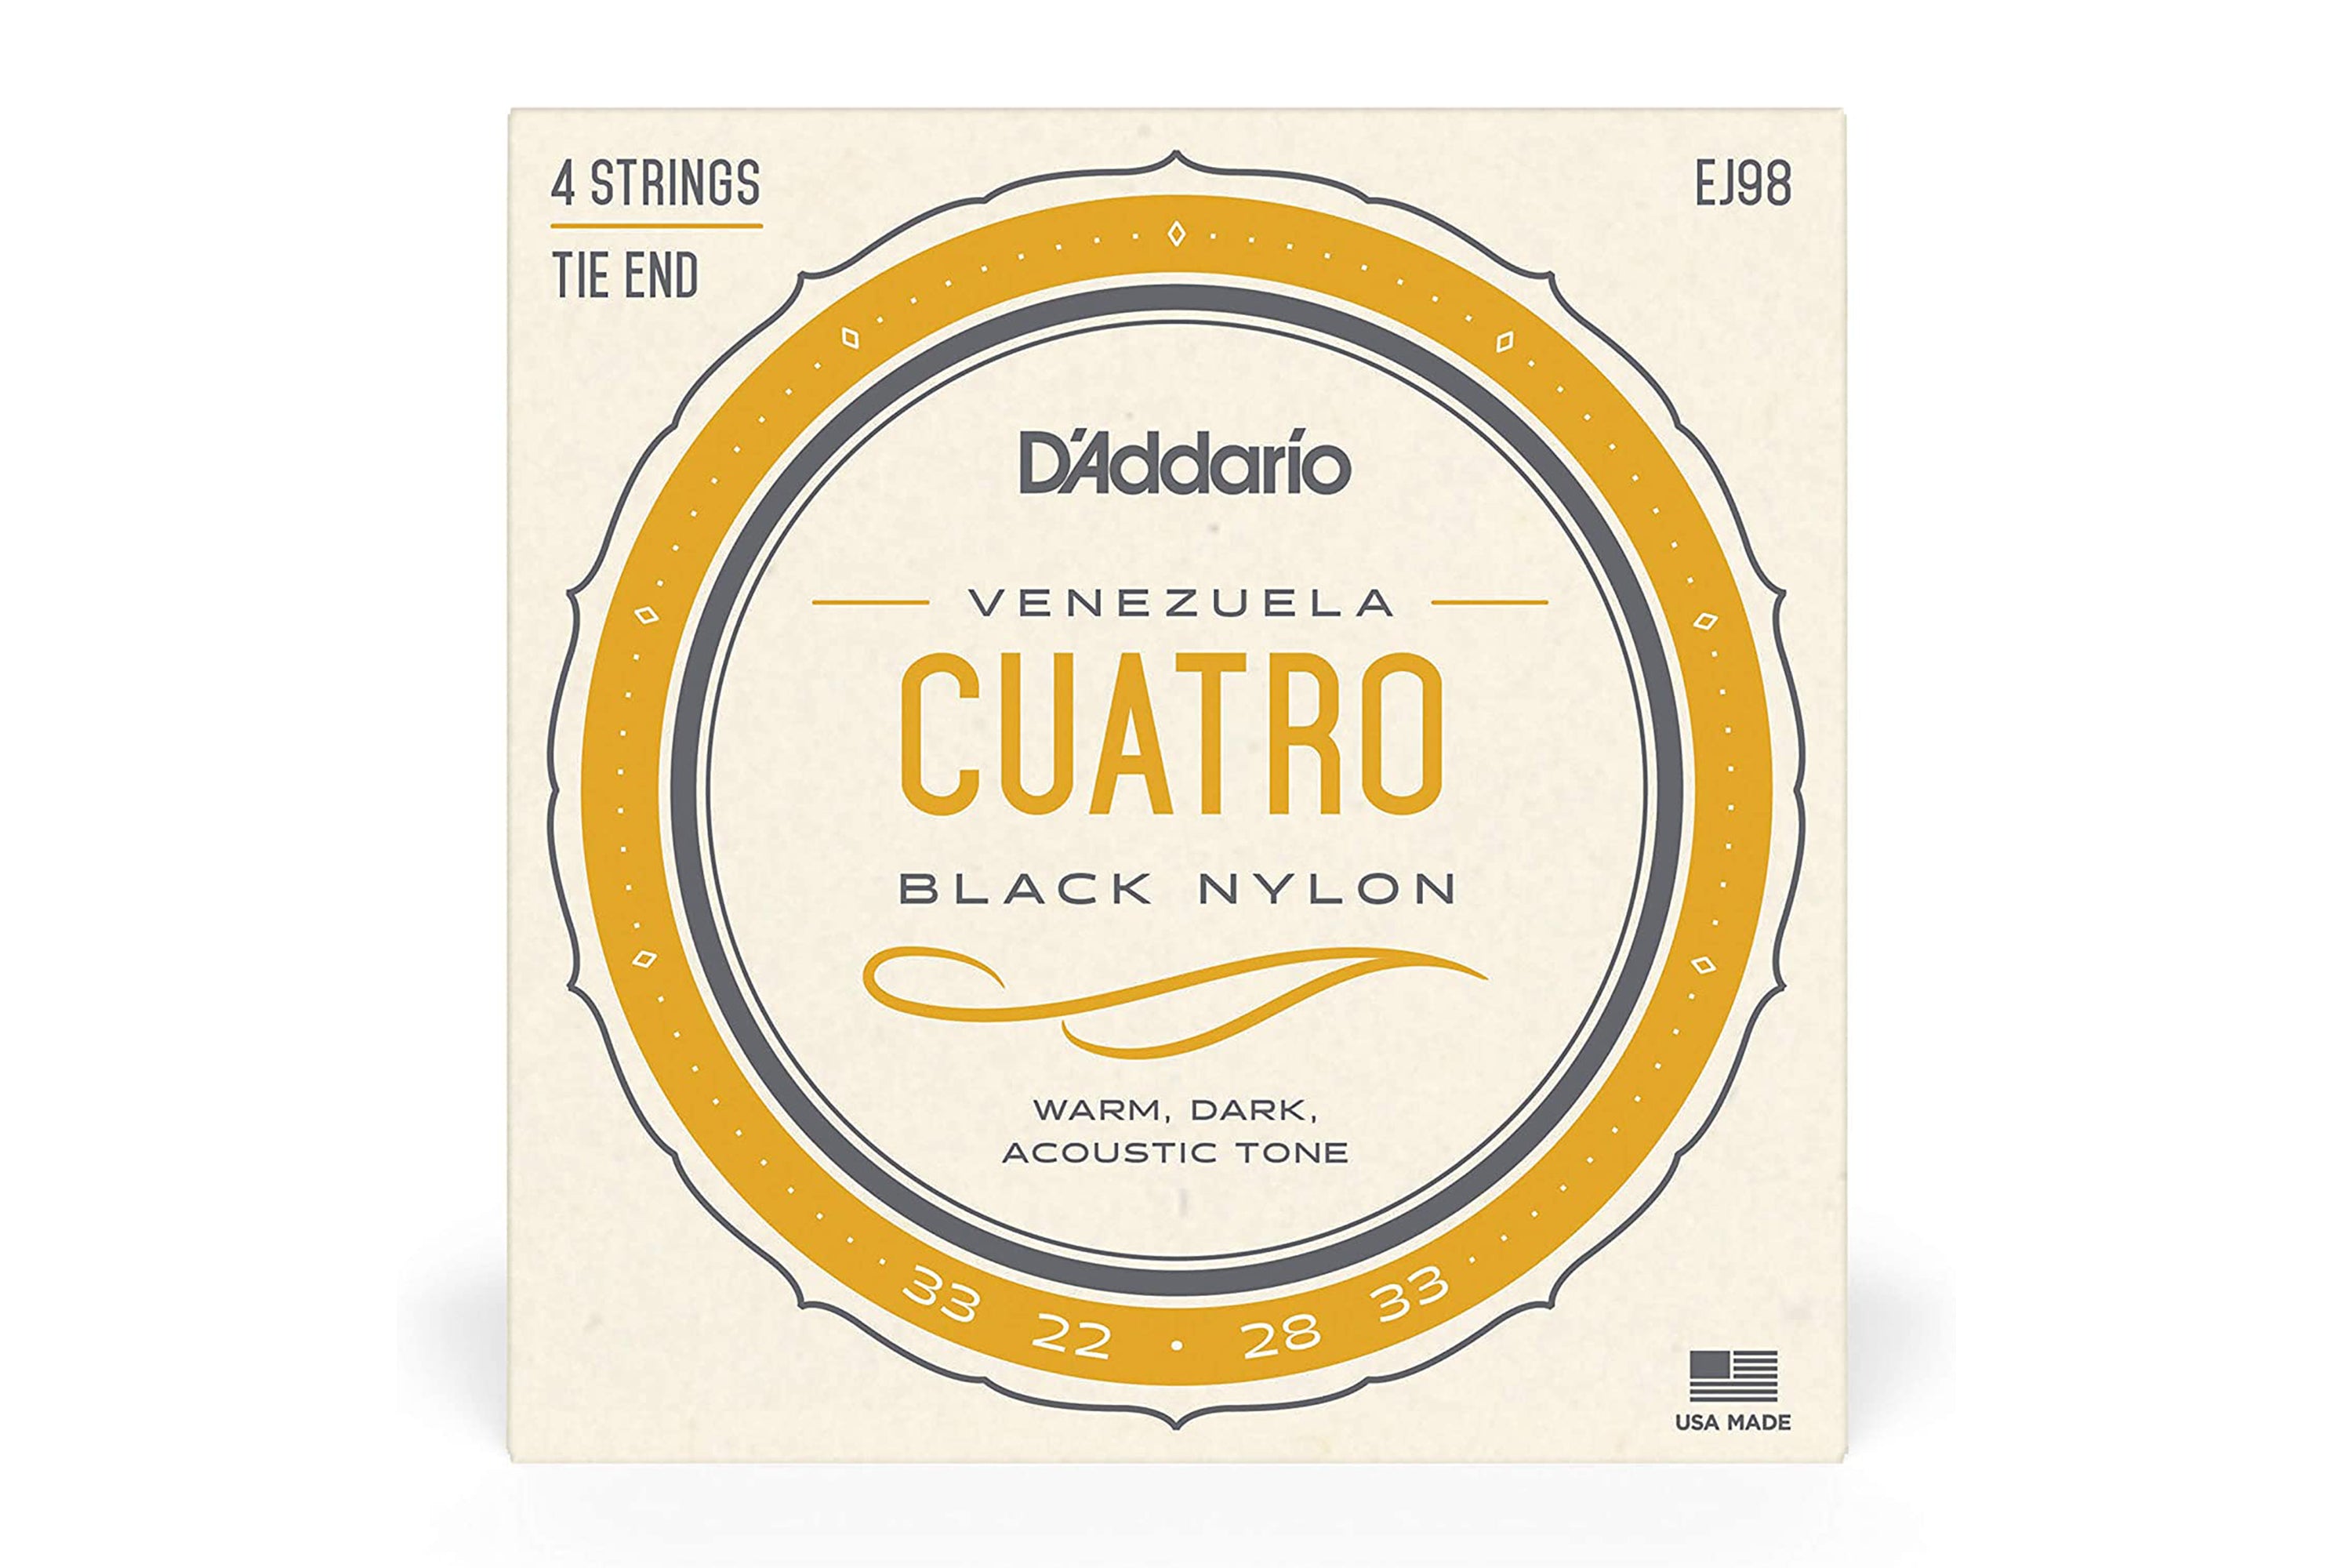 D'Addario EJ98 Black Nylon 4-String Cuatro-Venezuela Strings - .033-.033